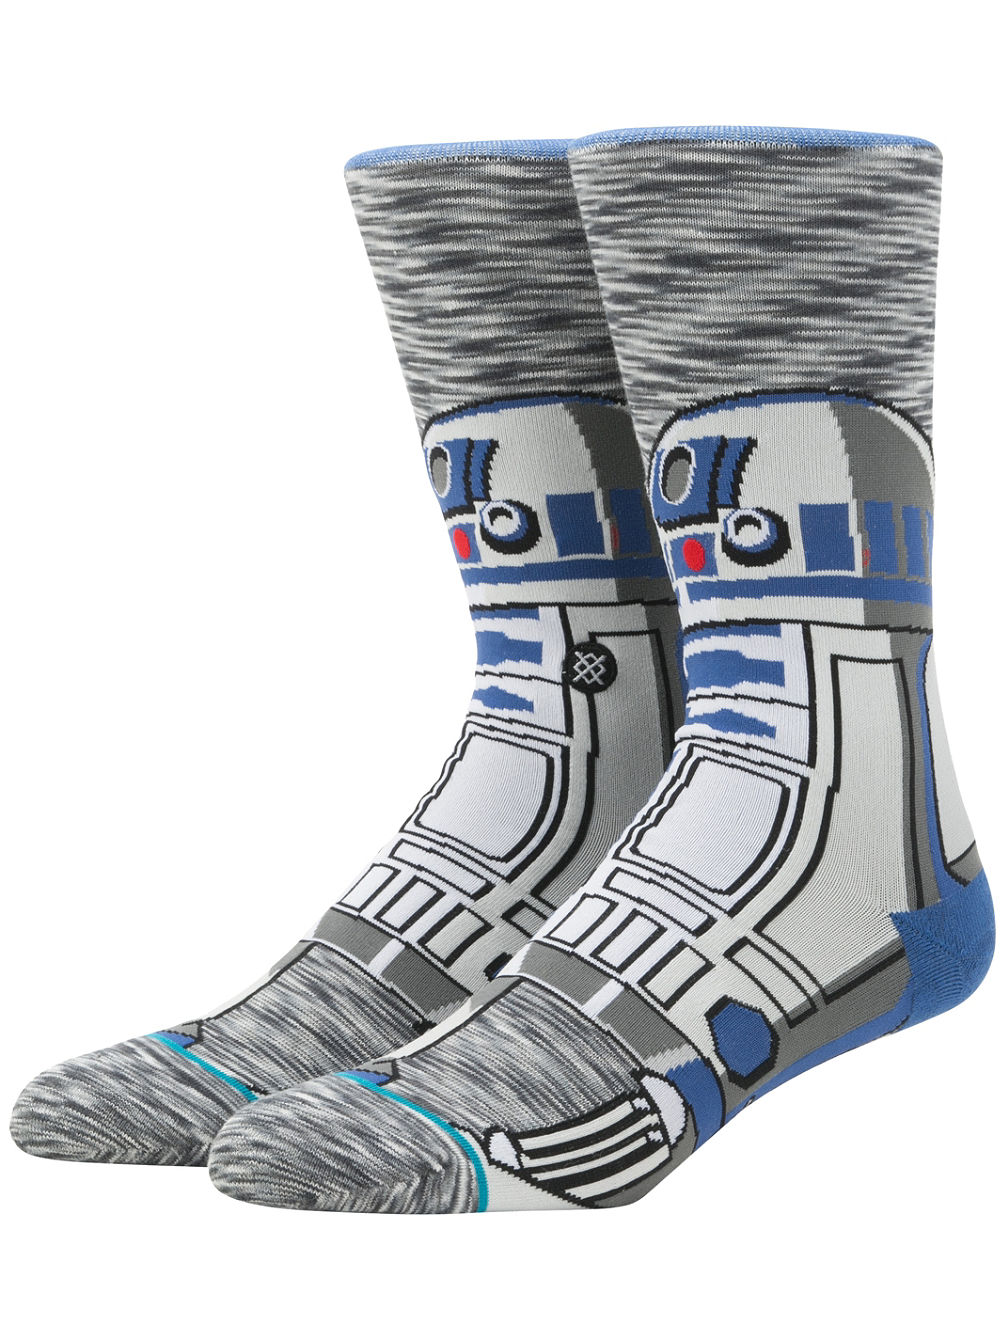 R2 Unit Star Wars Socken